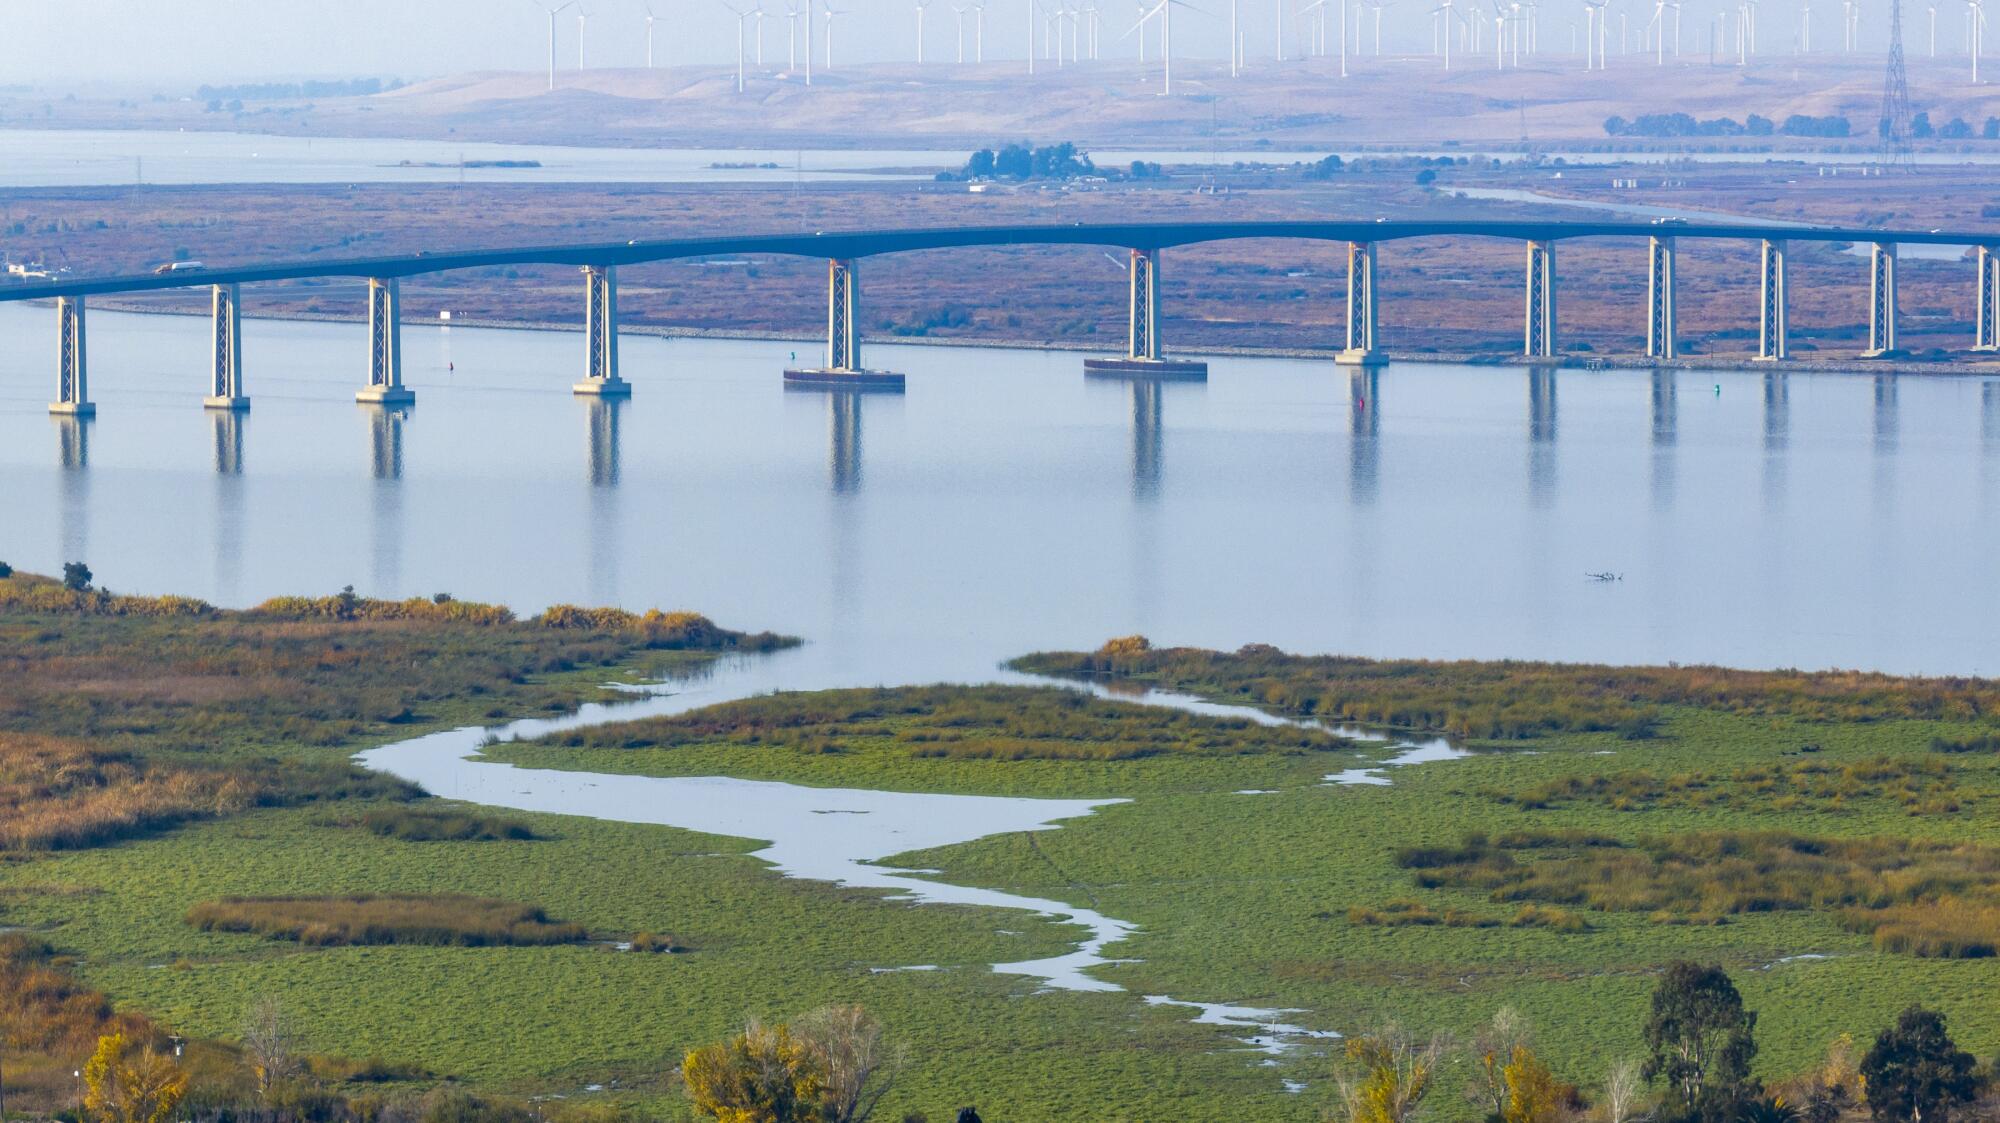 The Antioch Bridge over the San Joaquin River